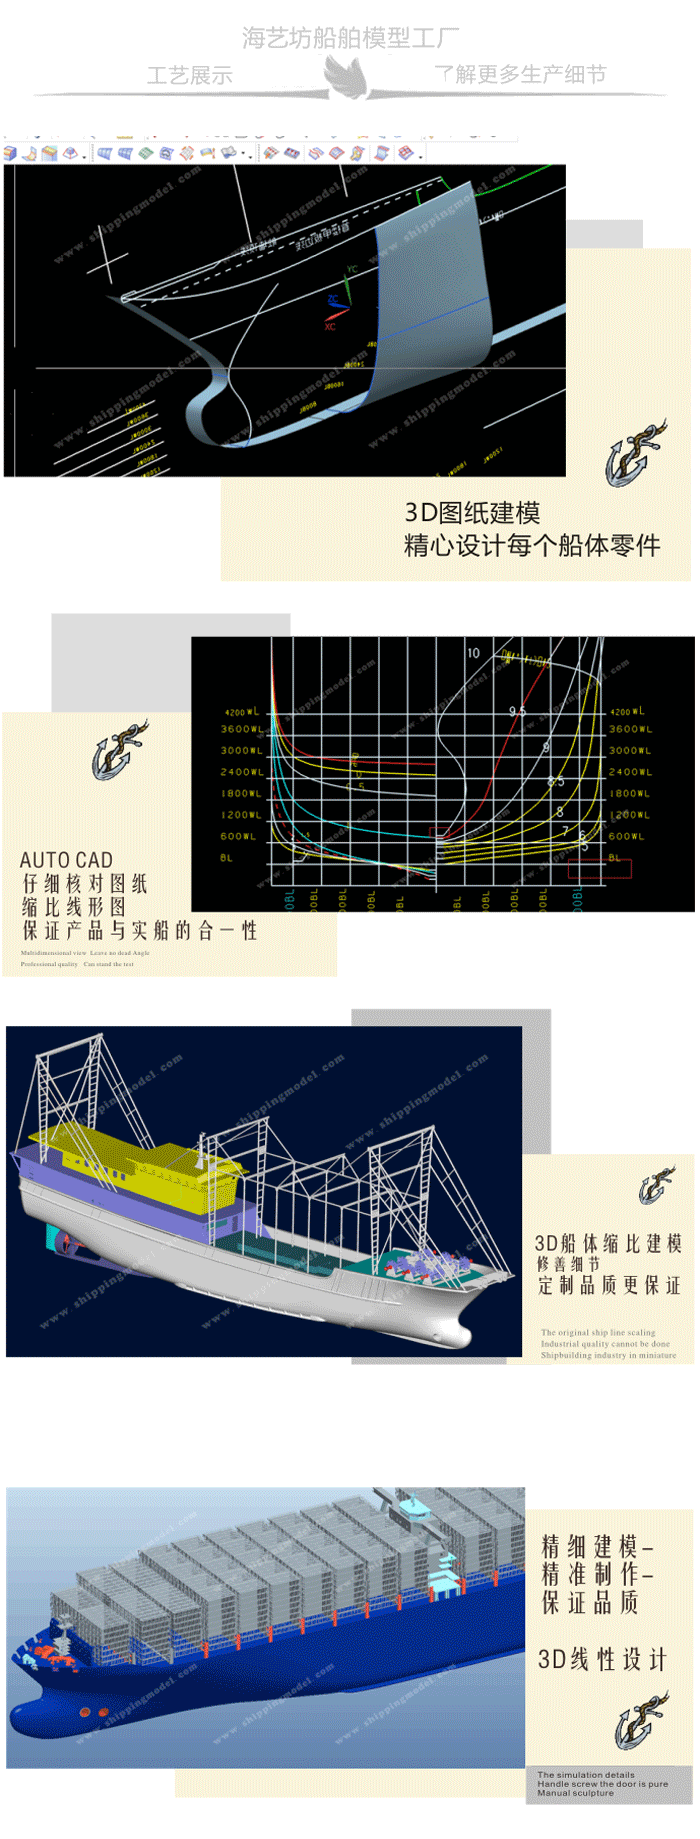 定制船模_40cm游艇模型定制B_海艺坊模型工厂